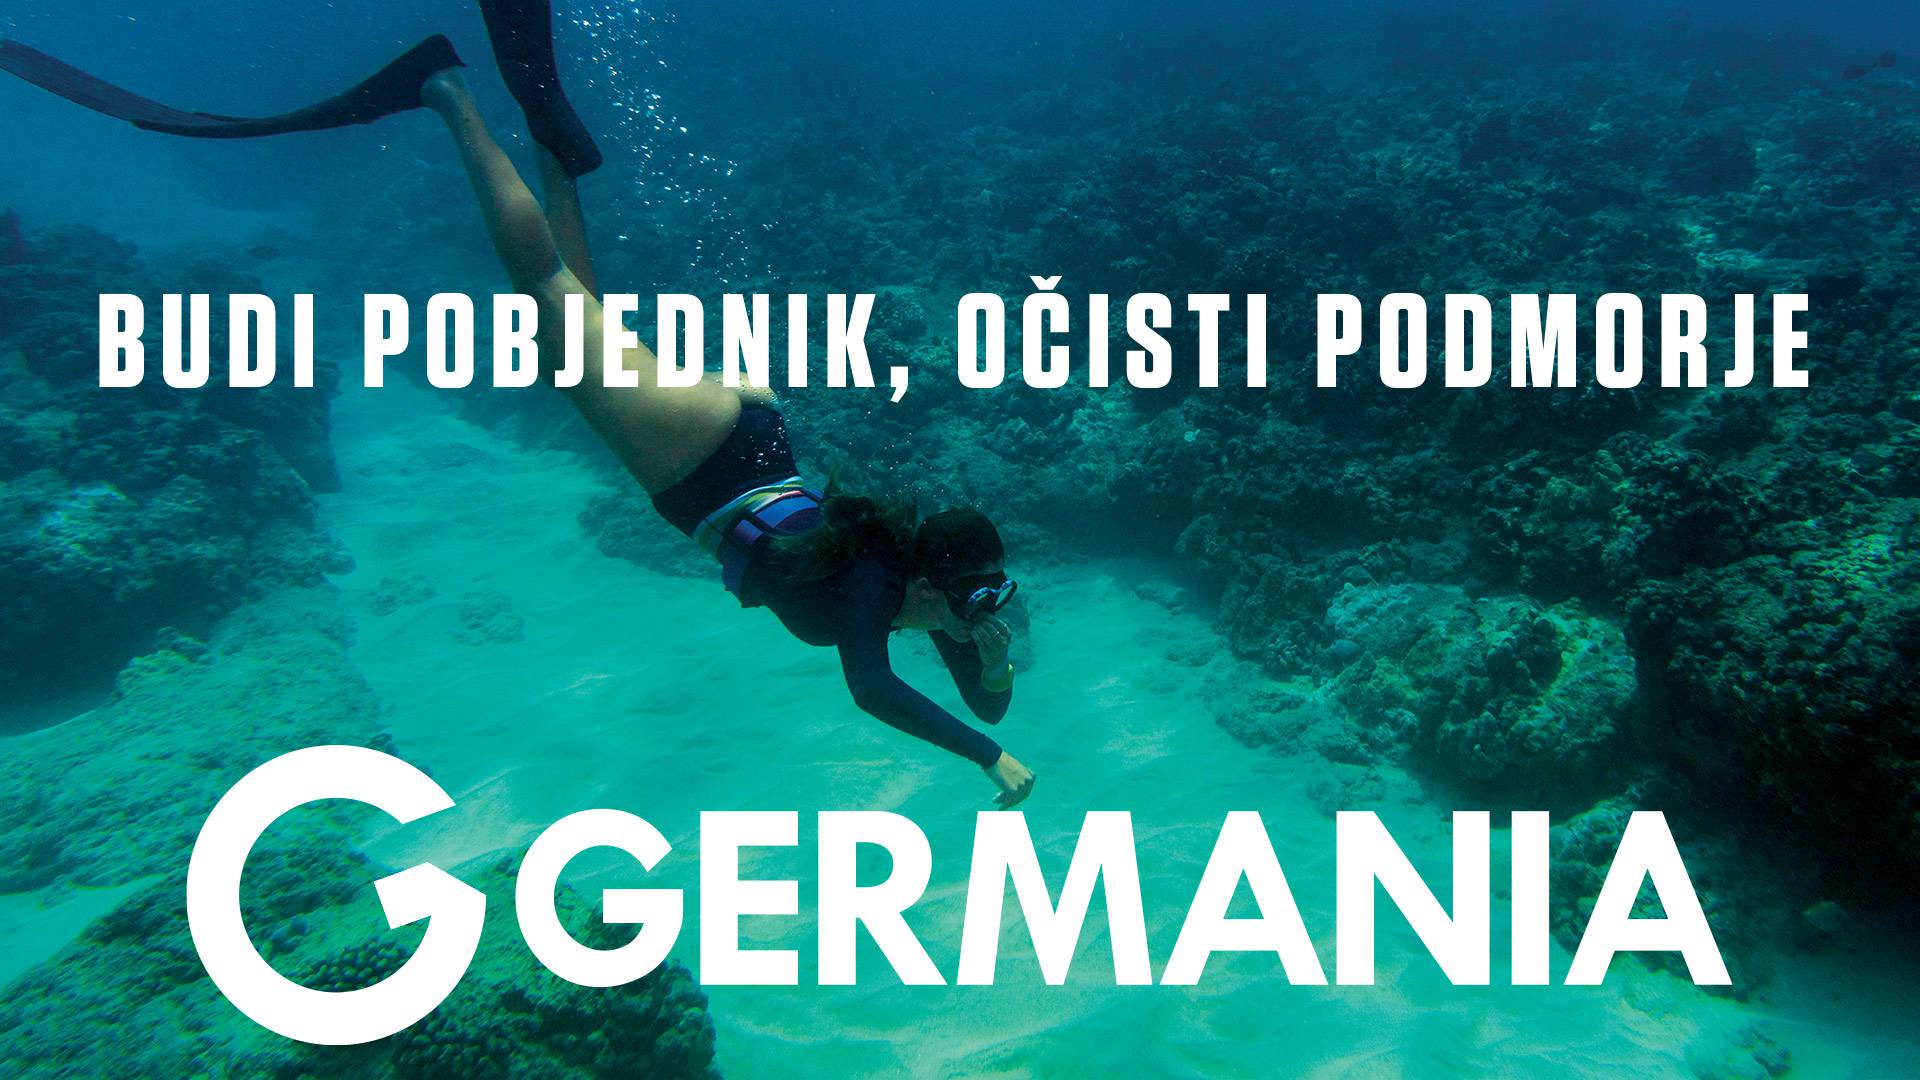 Budi pobjednik, očisti podmorje! Germania u akciji na otoku Korčuli